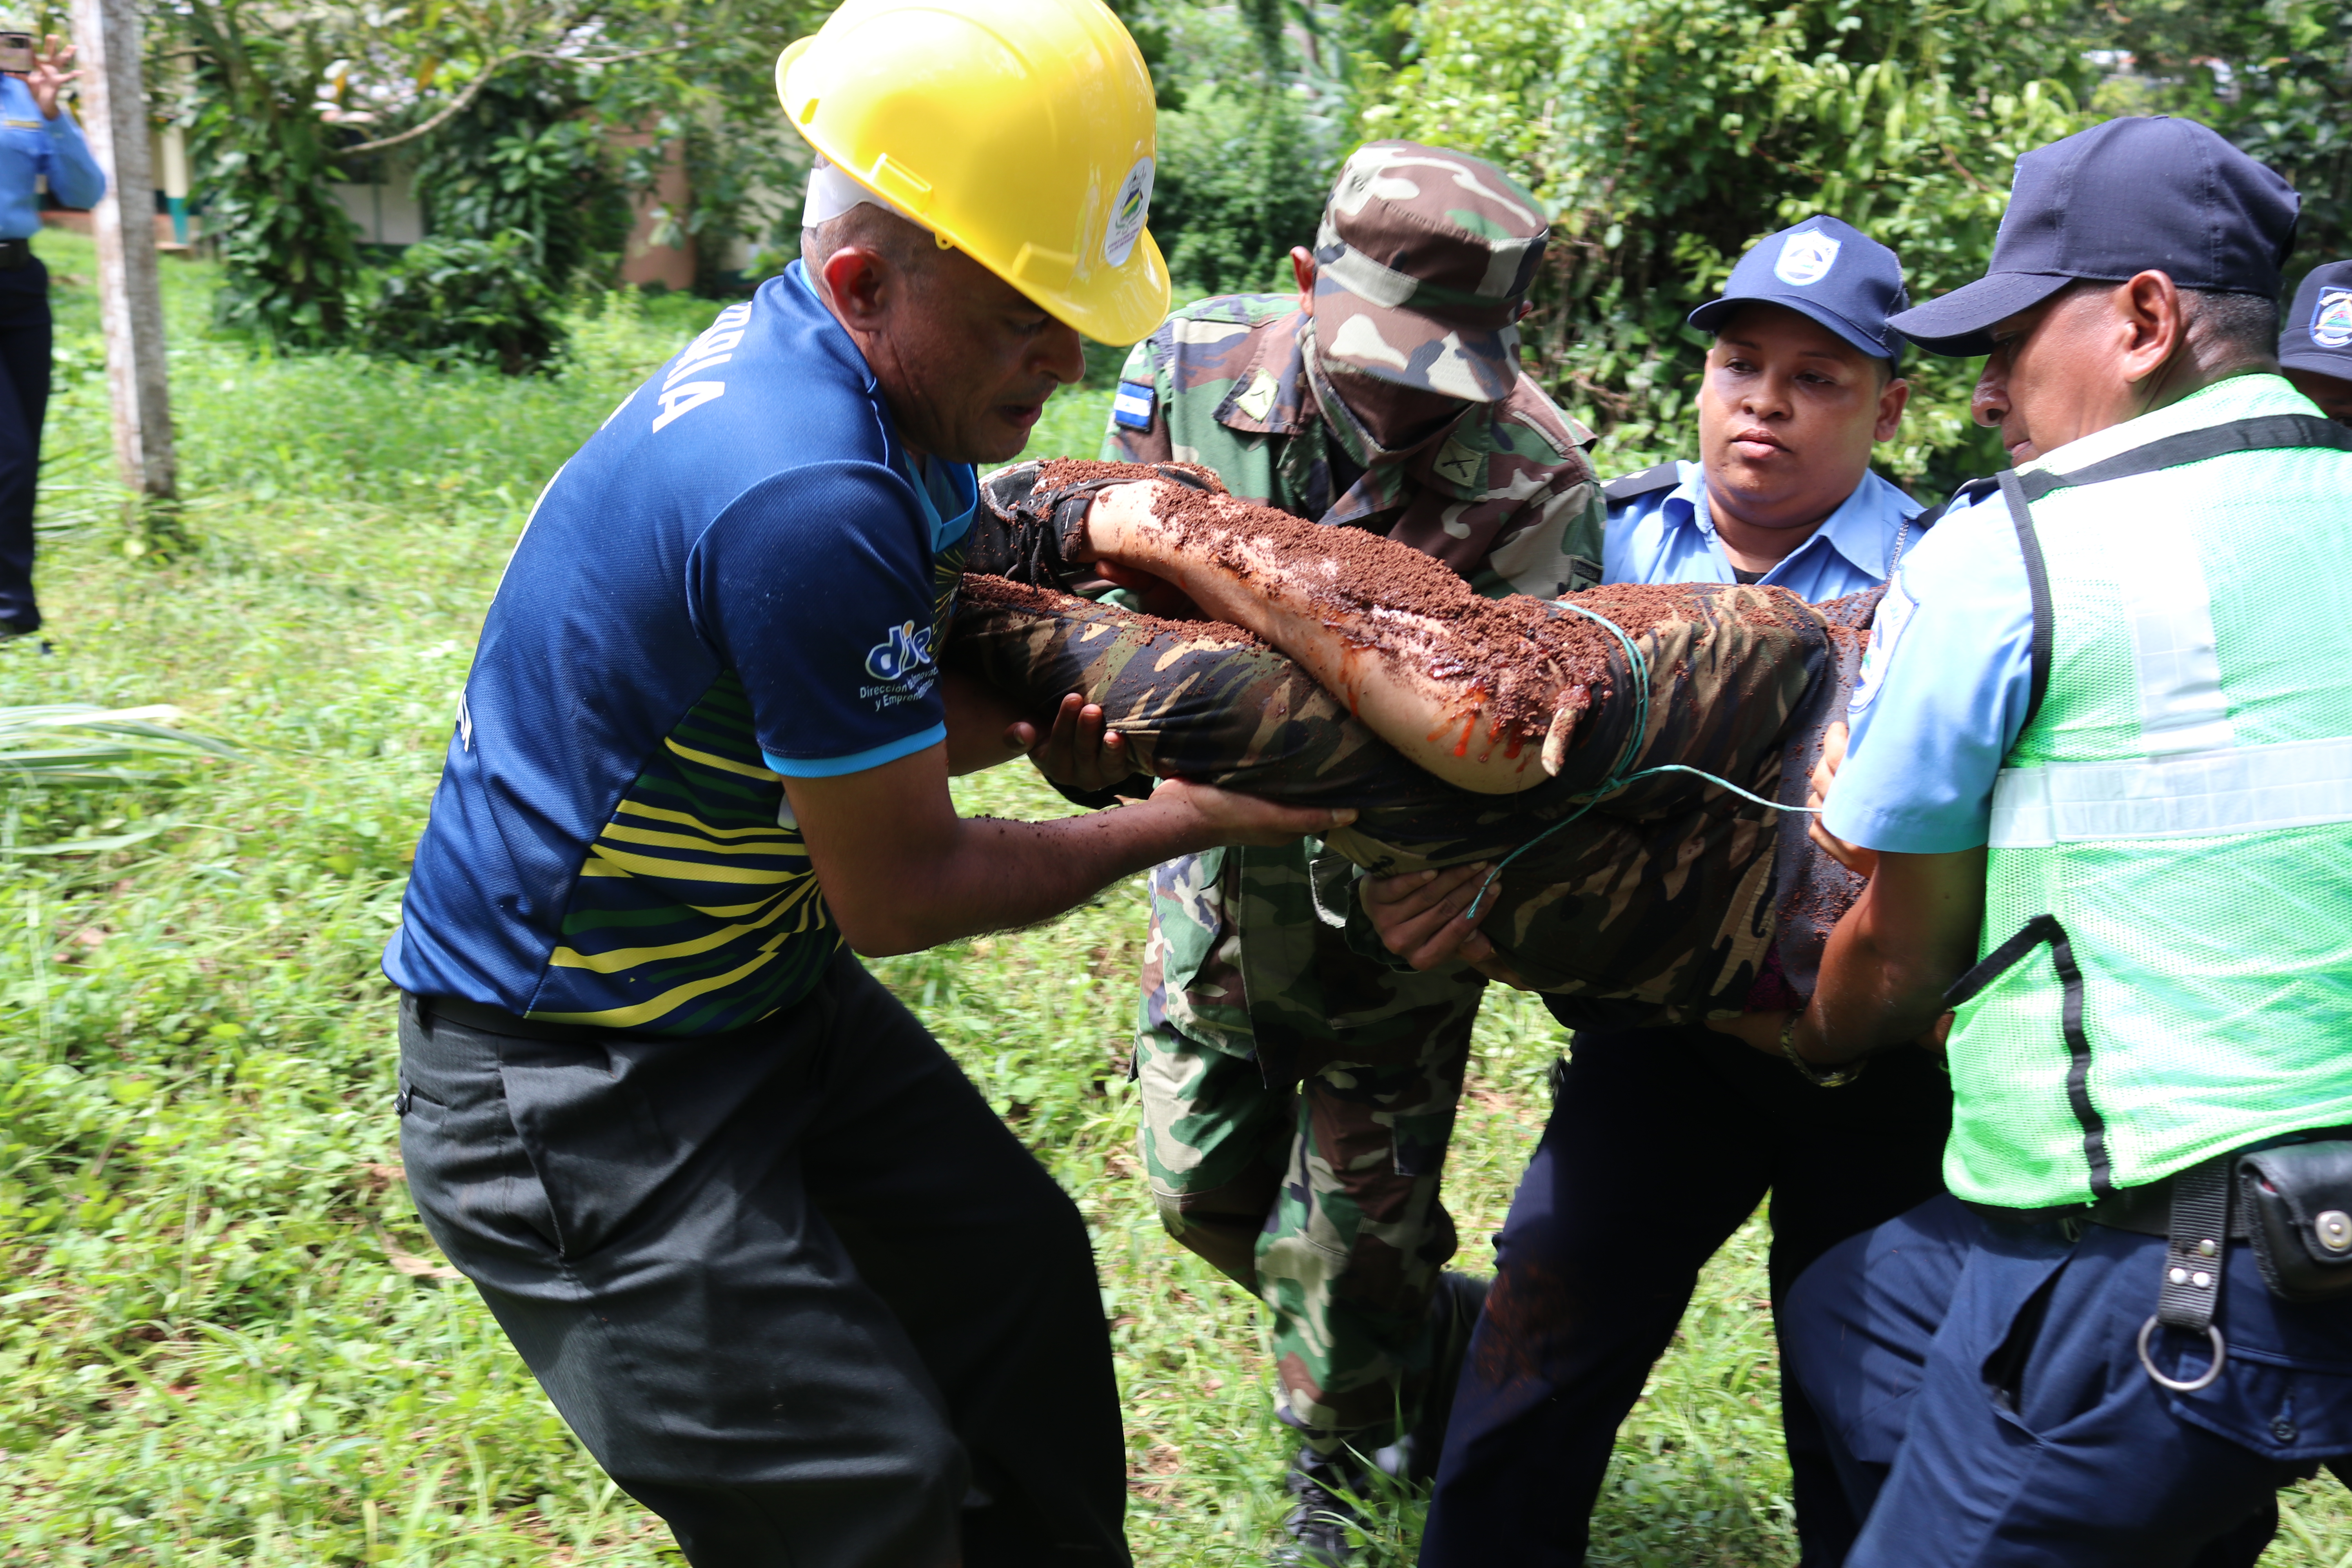 III Ejercicio Nacional de Protección a la vida ante Emergencias: Preparación y coordinación